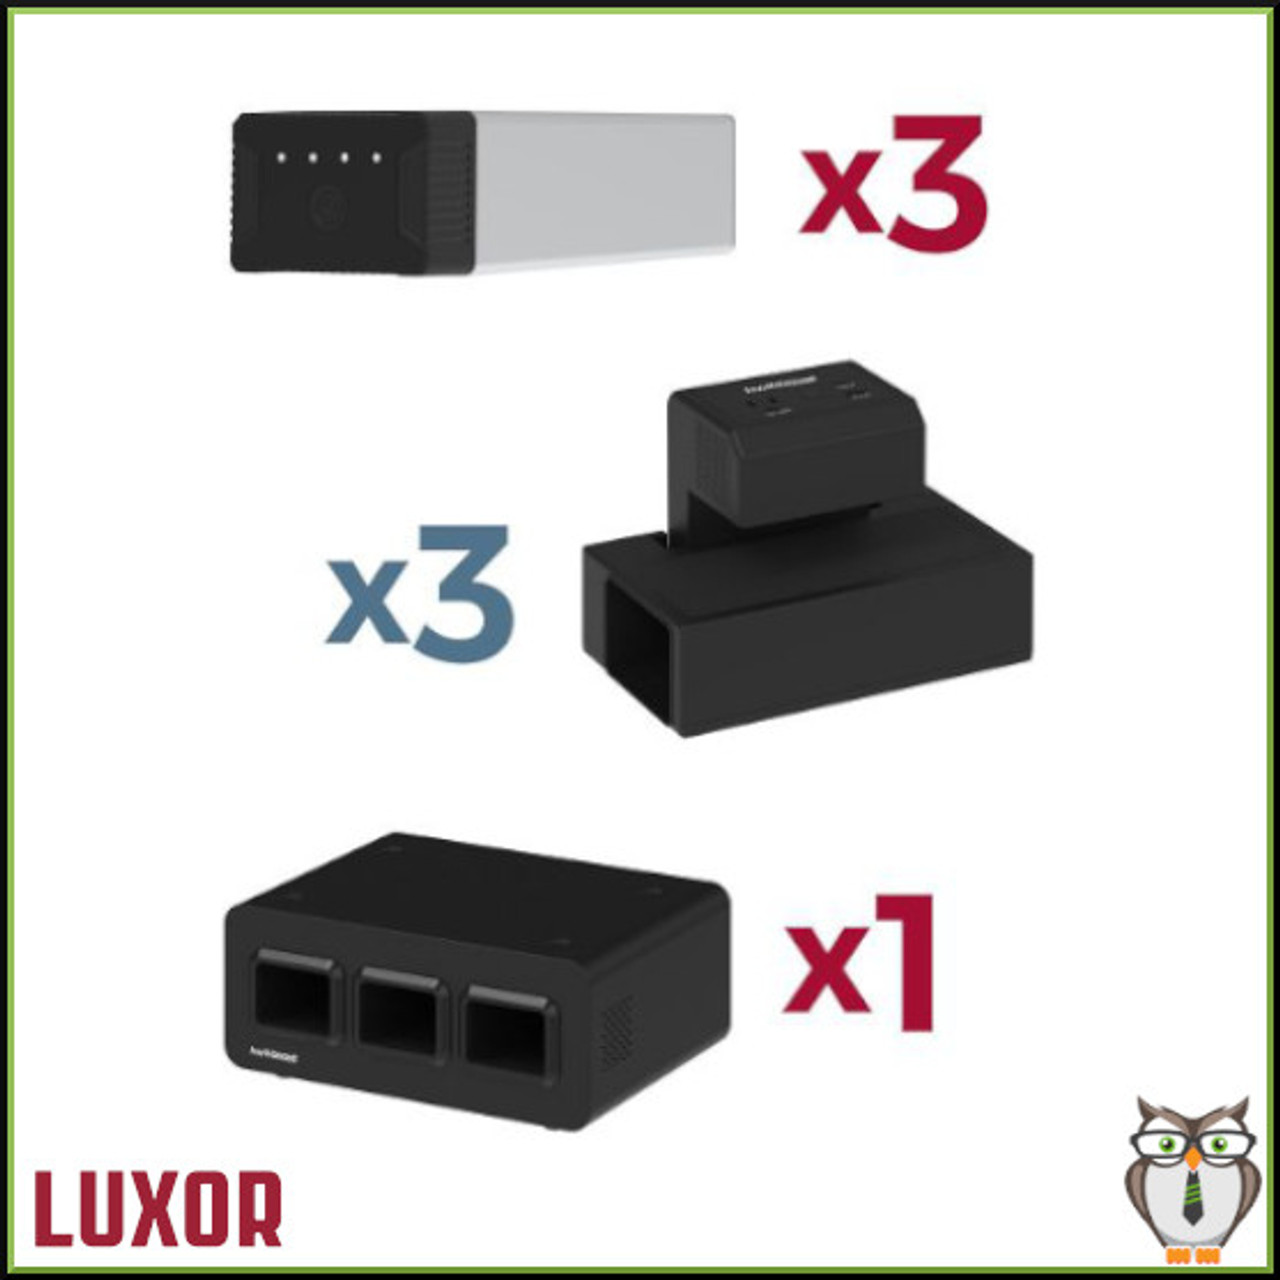 Luxor KwikBoost EdgePower® Desktop Charging Station System - Light Use Bundle - 1 3-Bay Base Charging Station, 3 Clamp-On Desktop Charging Units, 3 Rechargeable Batteries